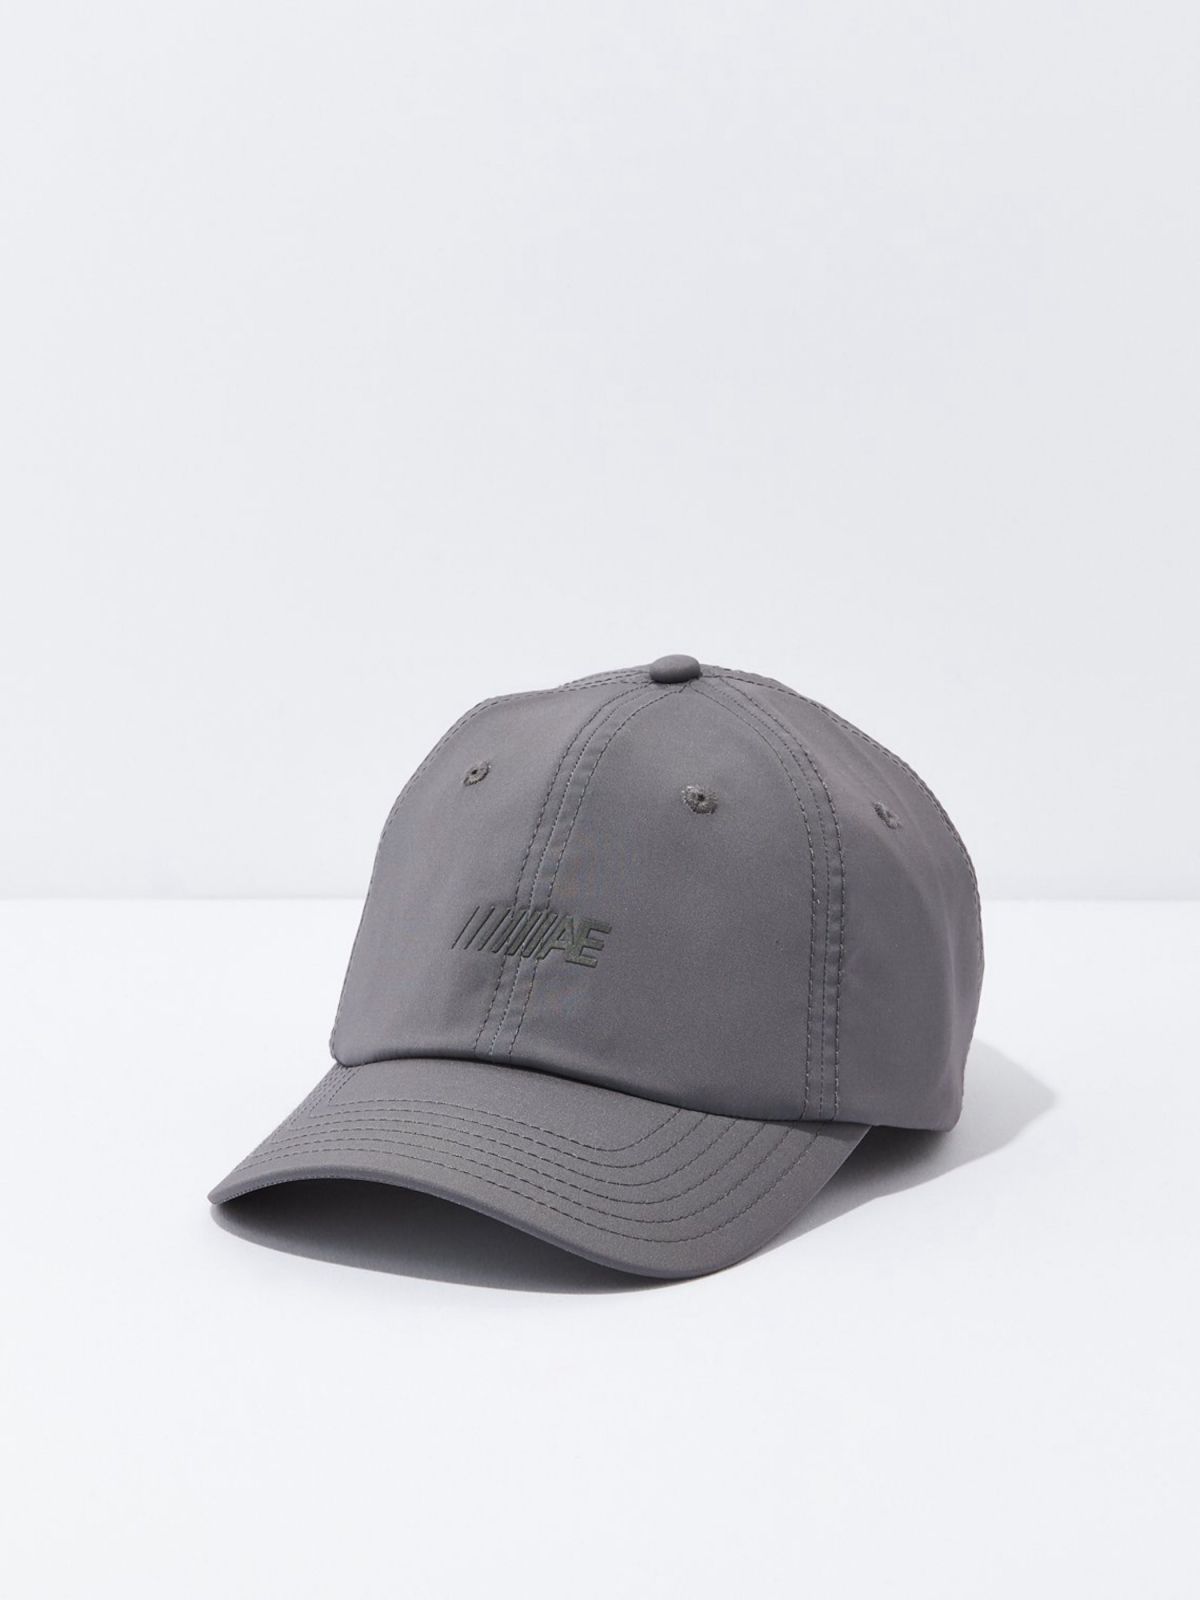  כובע מצחייה אקטיב עם לוגו / גברים של AMERICAN EAGLE